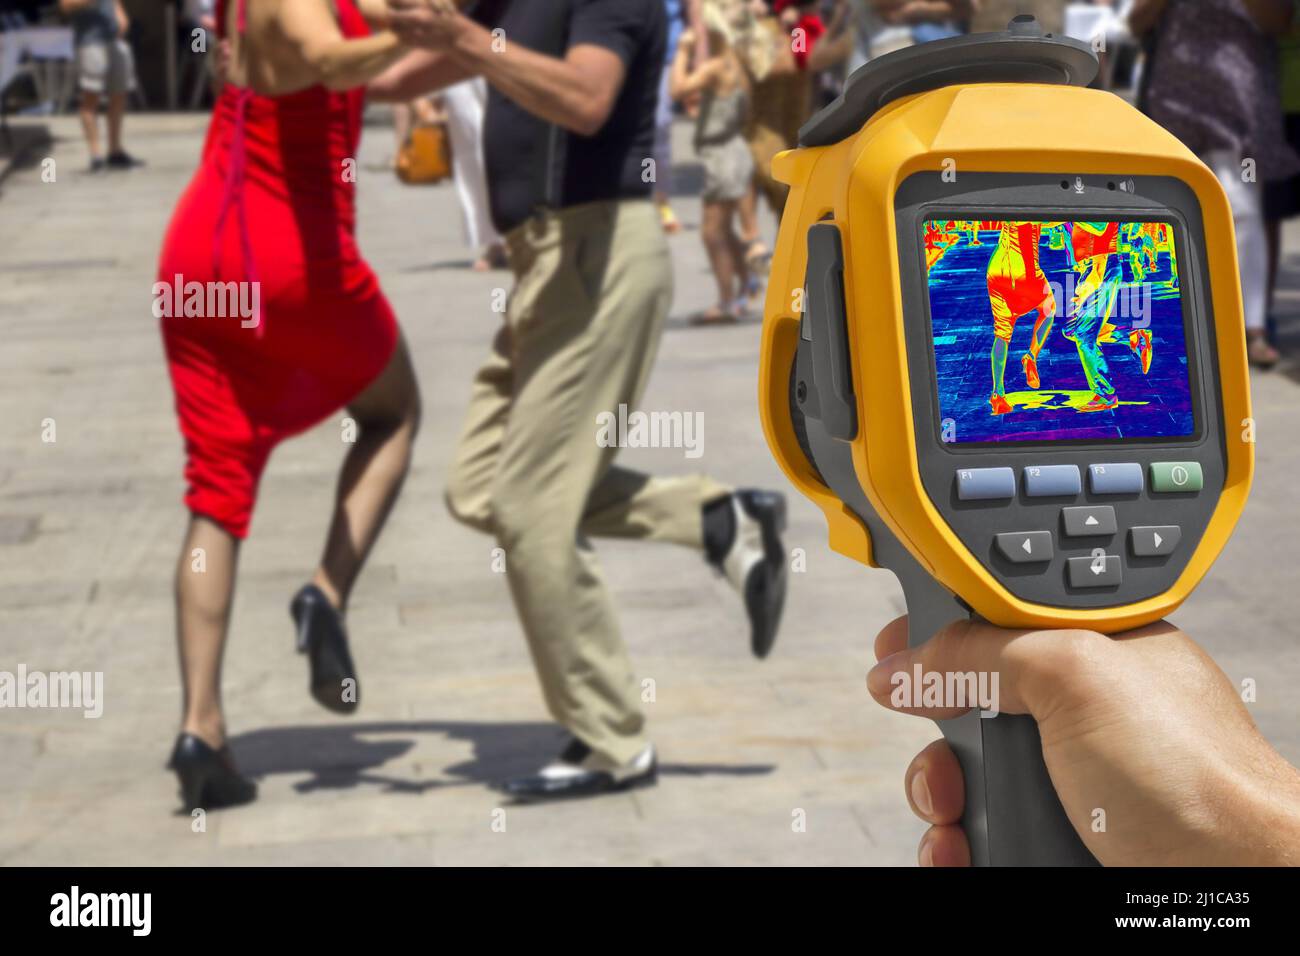 Grabación de bailarines callejeros interpretando tango, con cámara térmica infrarroja Foto de stock